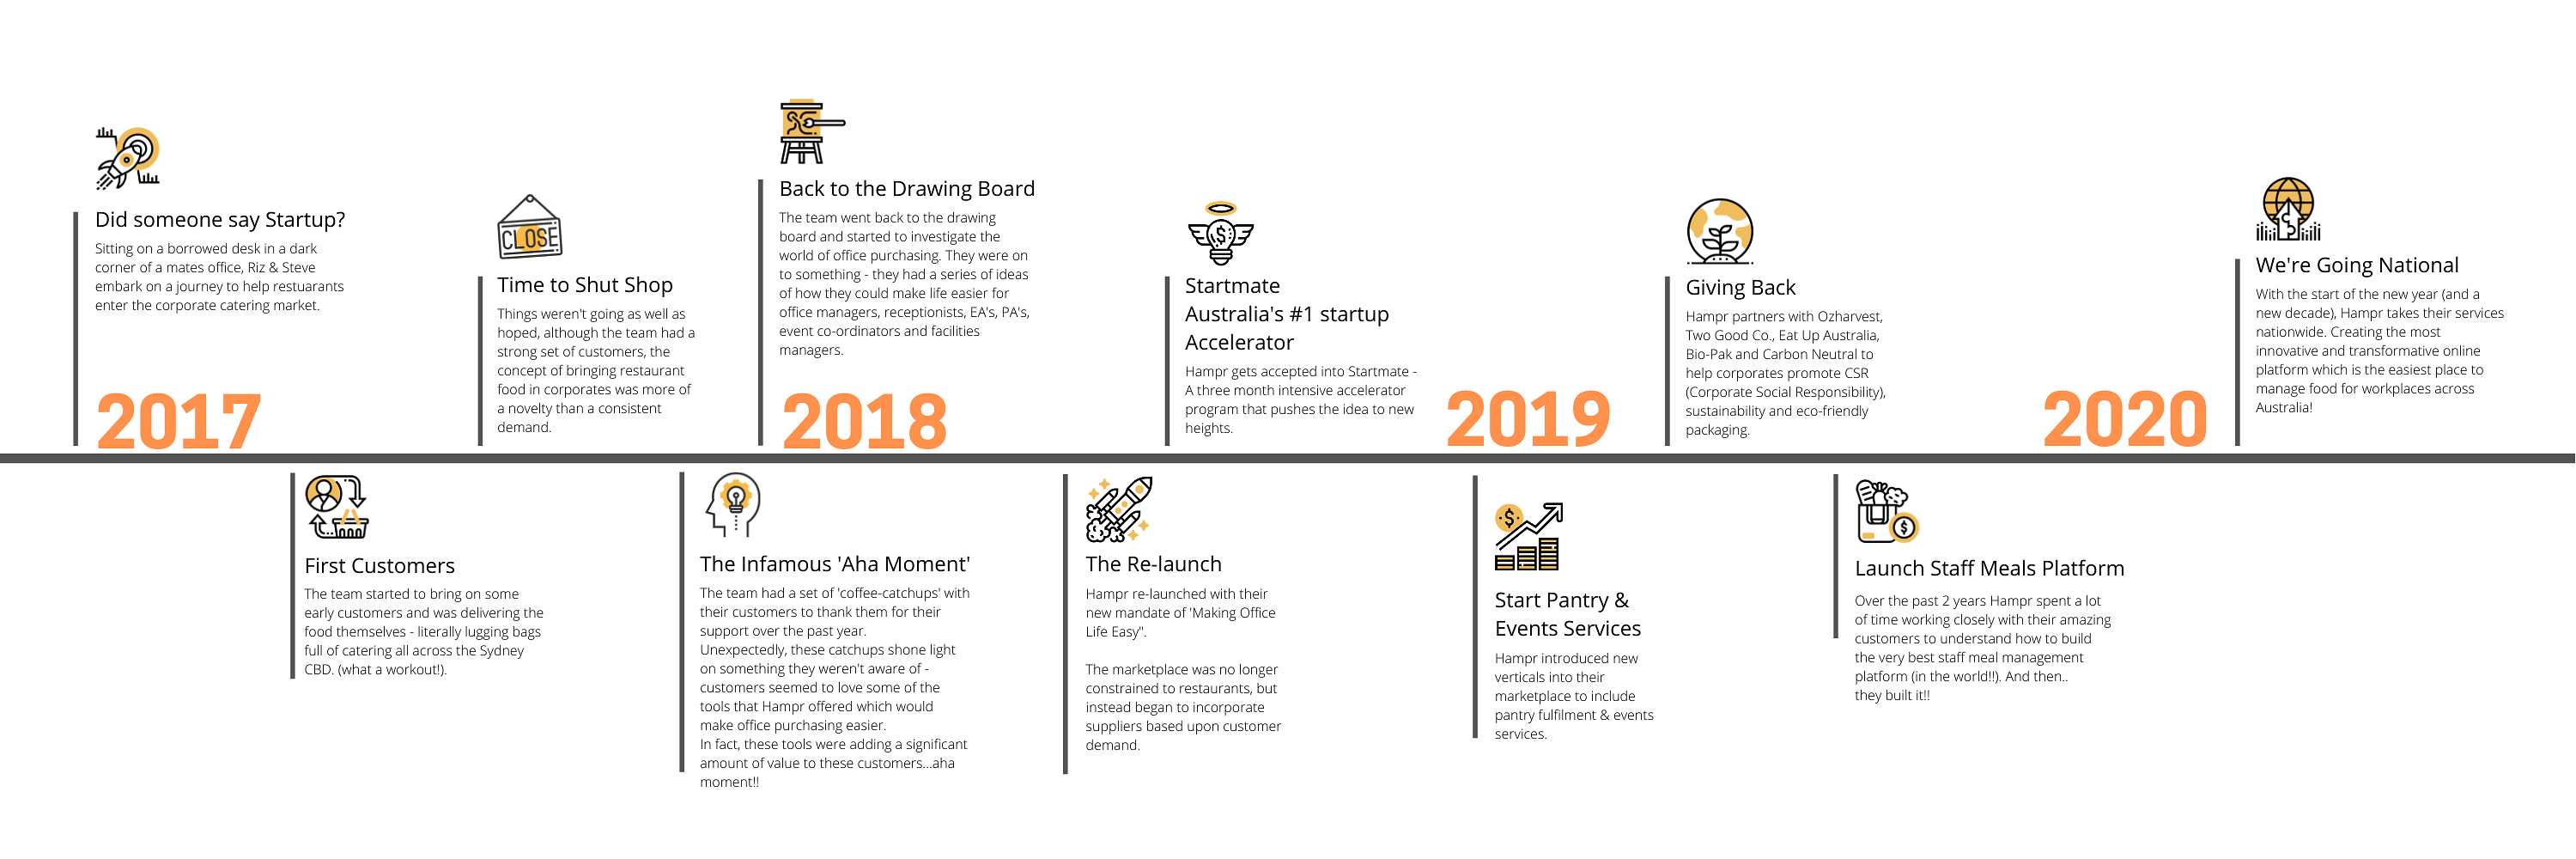 Timeline of Hampr's company journey